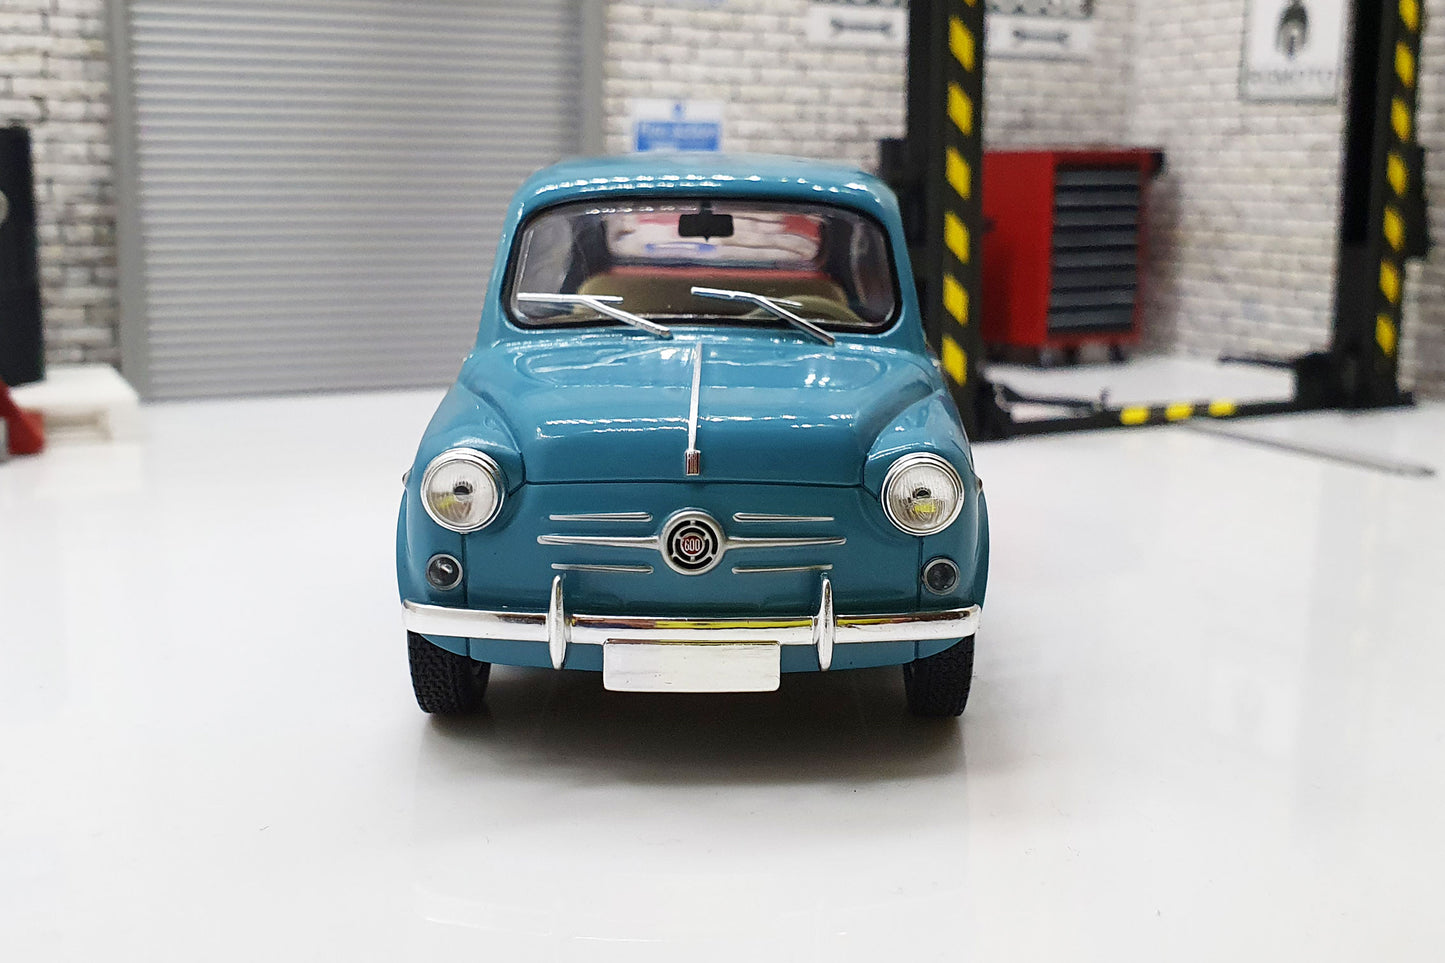 Fiat 600 - Blue 1:24 Scale